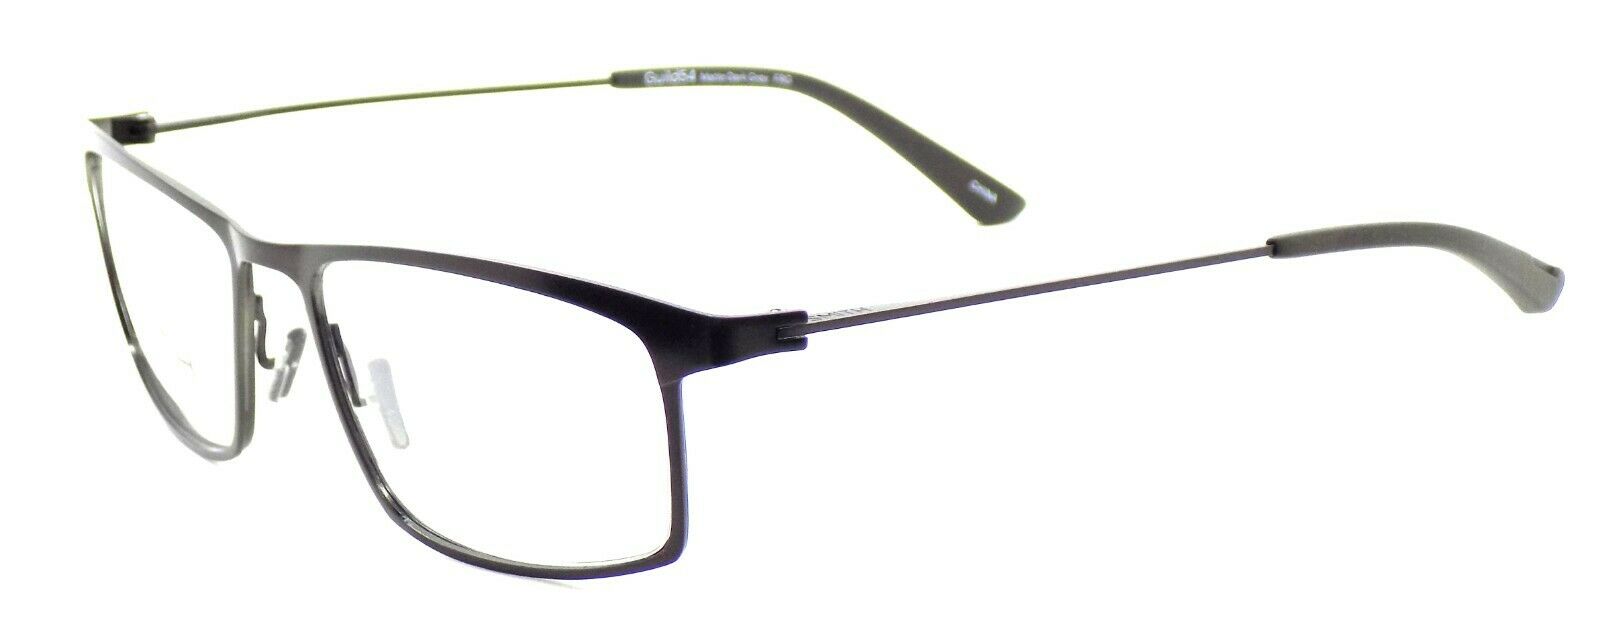 1-SMITH Optics Guild54 FRG Men's Eyeglasses Frames 54-17-140 Matte Dark Grey-762753295842-IKSpecs